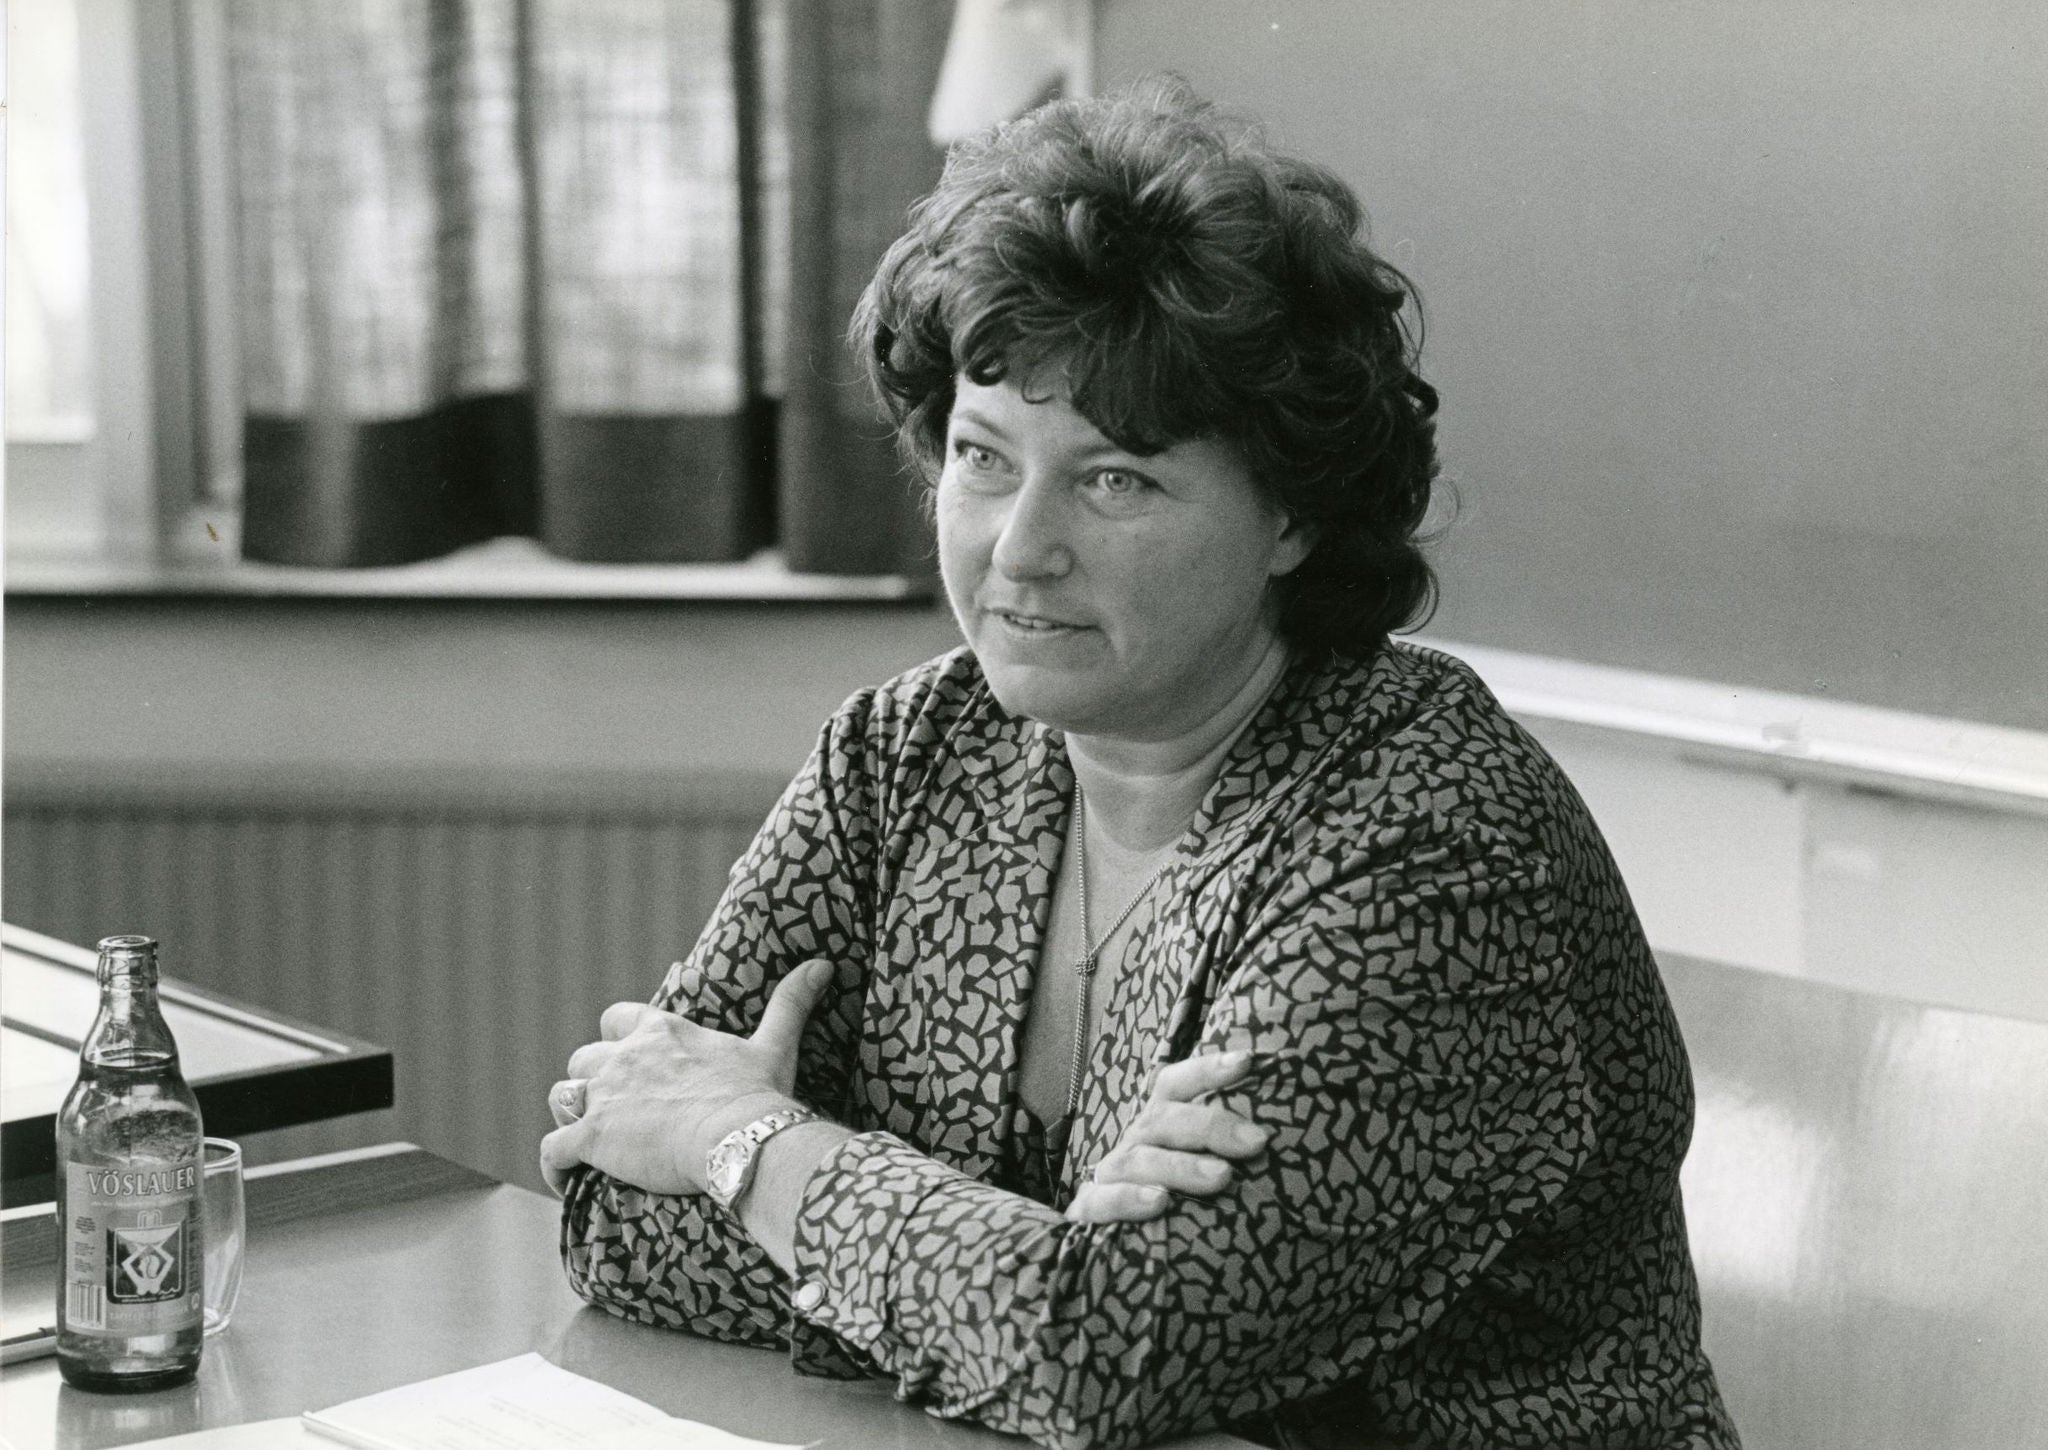 Eleonora Hostasch bei der Redakteurekonferenz in Bad Vöslau (1989)